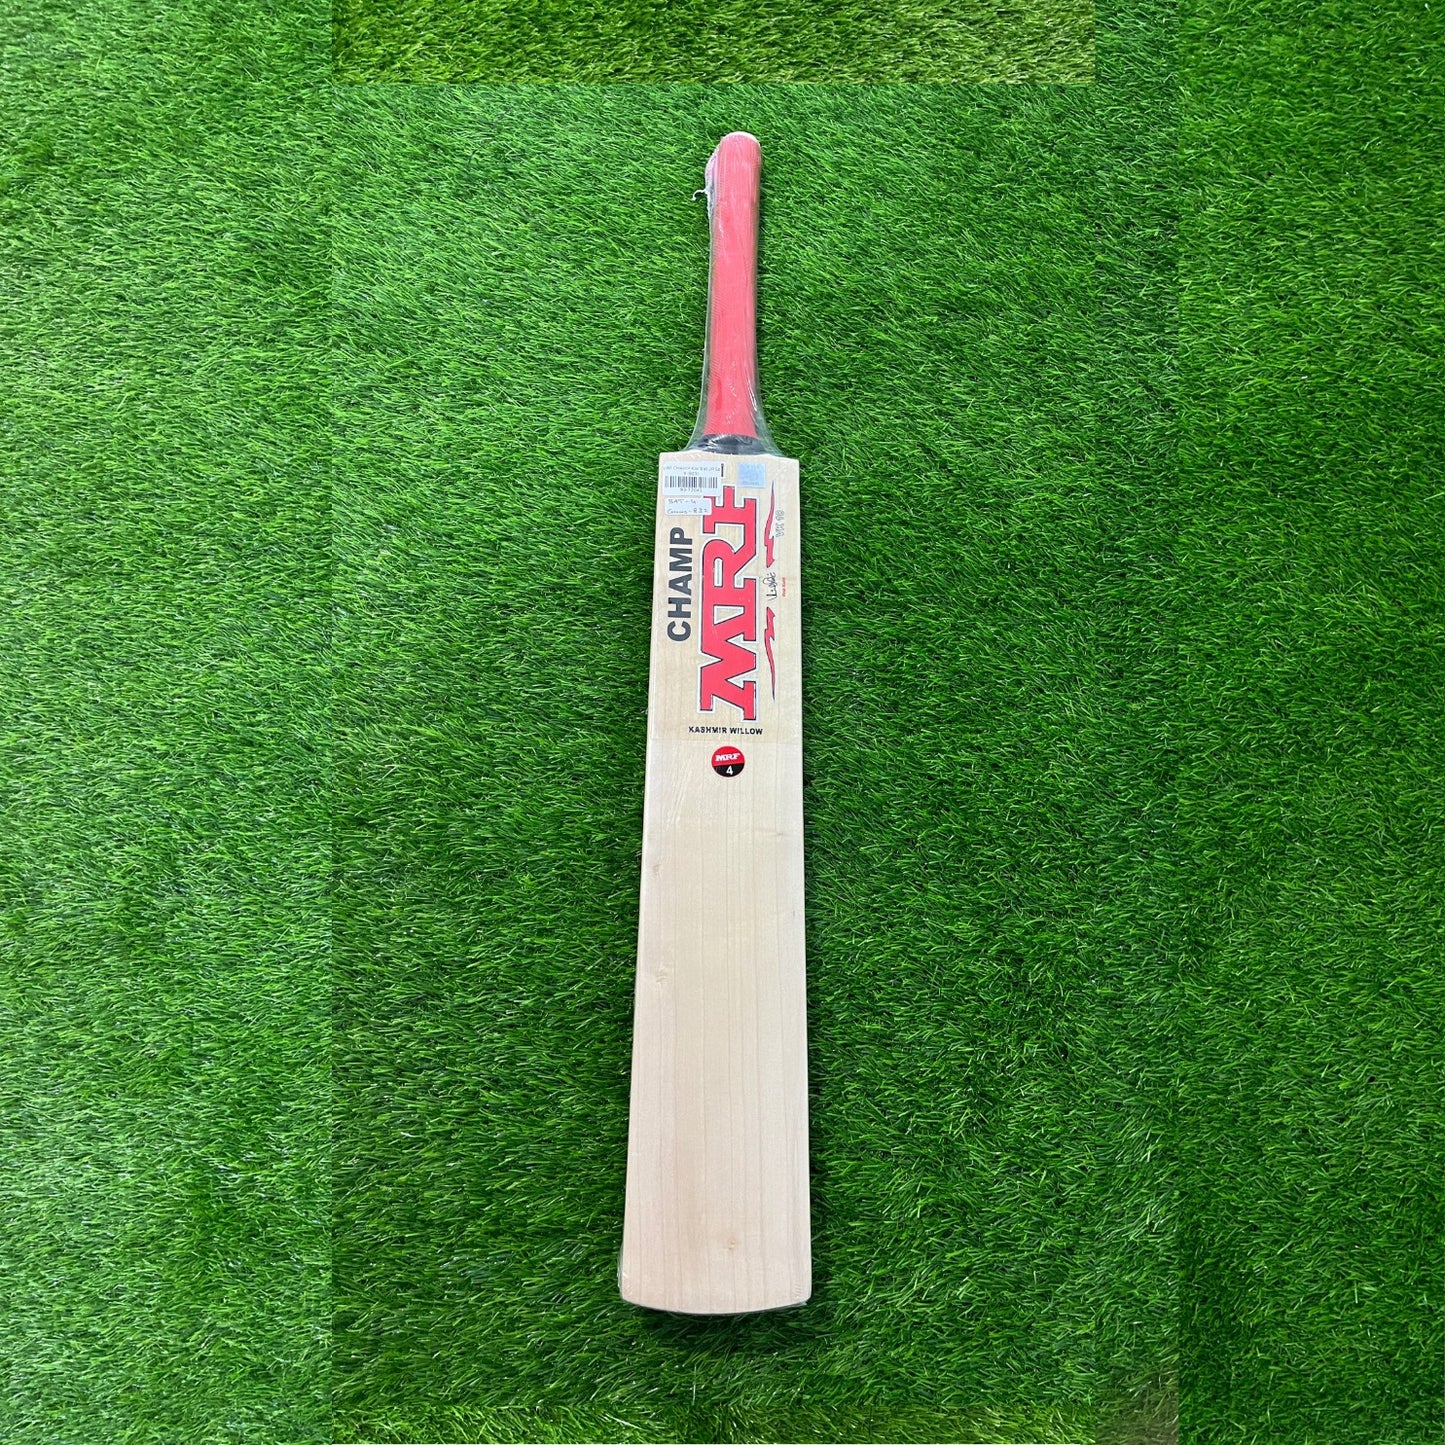 MRF KW CHAMP Kashmir Willow Cricket Bat - Junior Size 4 (Four)